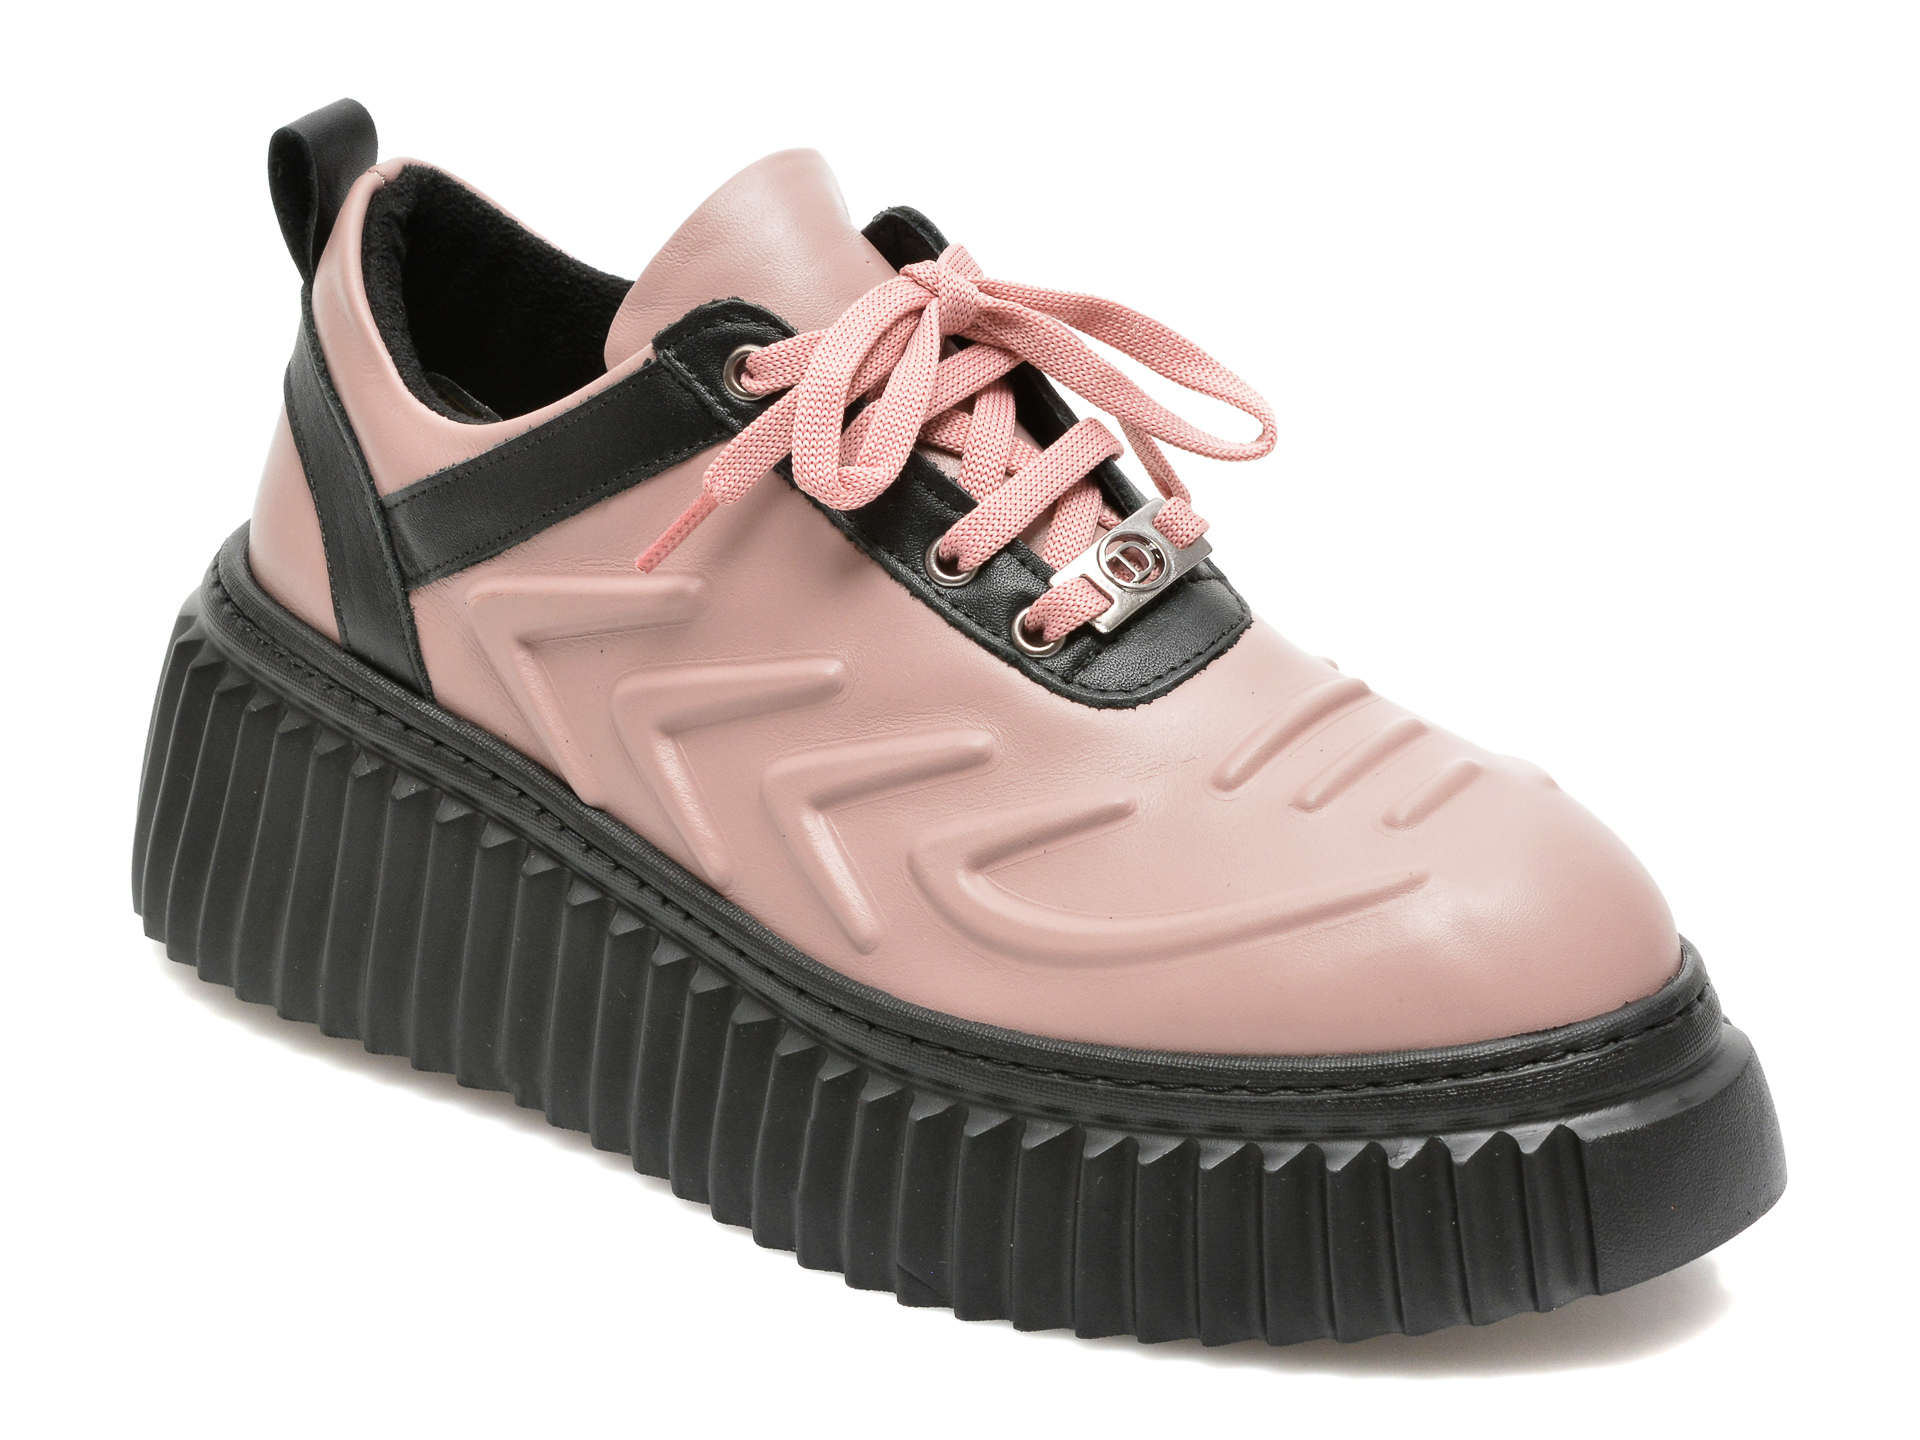 Pantofi FLAVIA PASSINI roz, 82213, din piele naturala Flavia Passini imagine noua